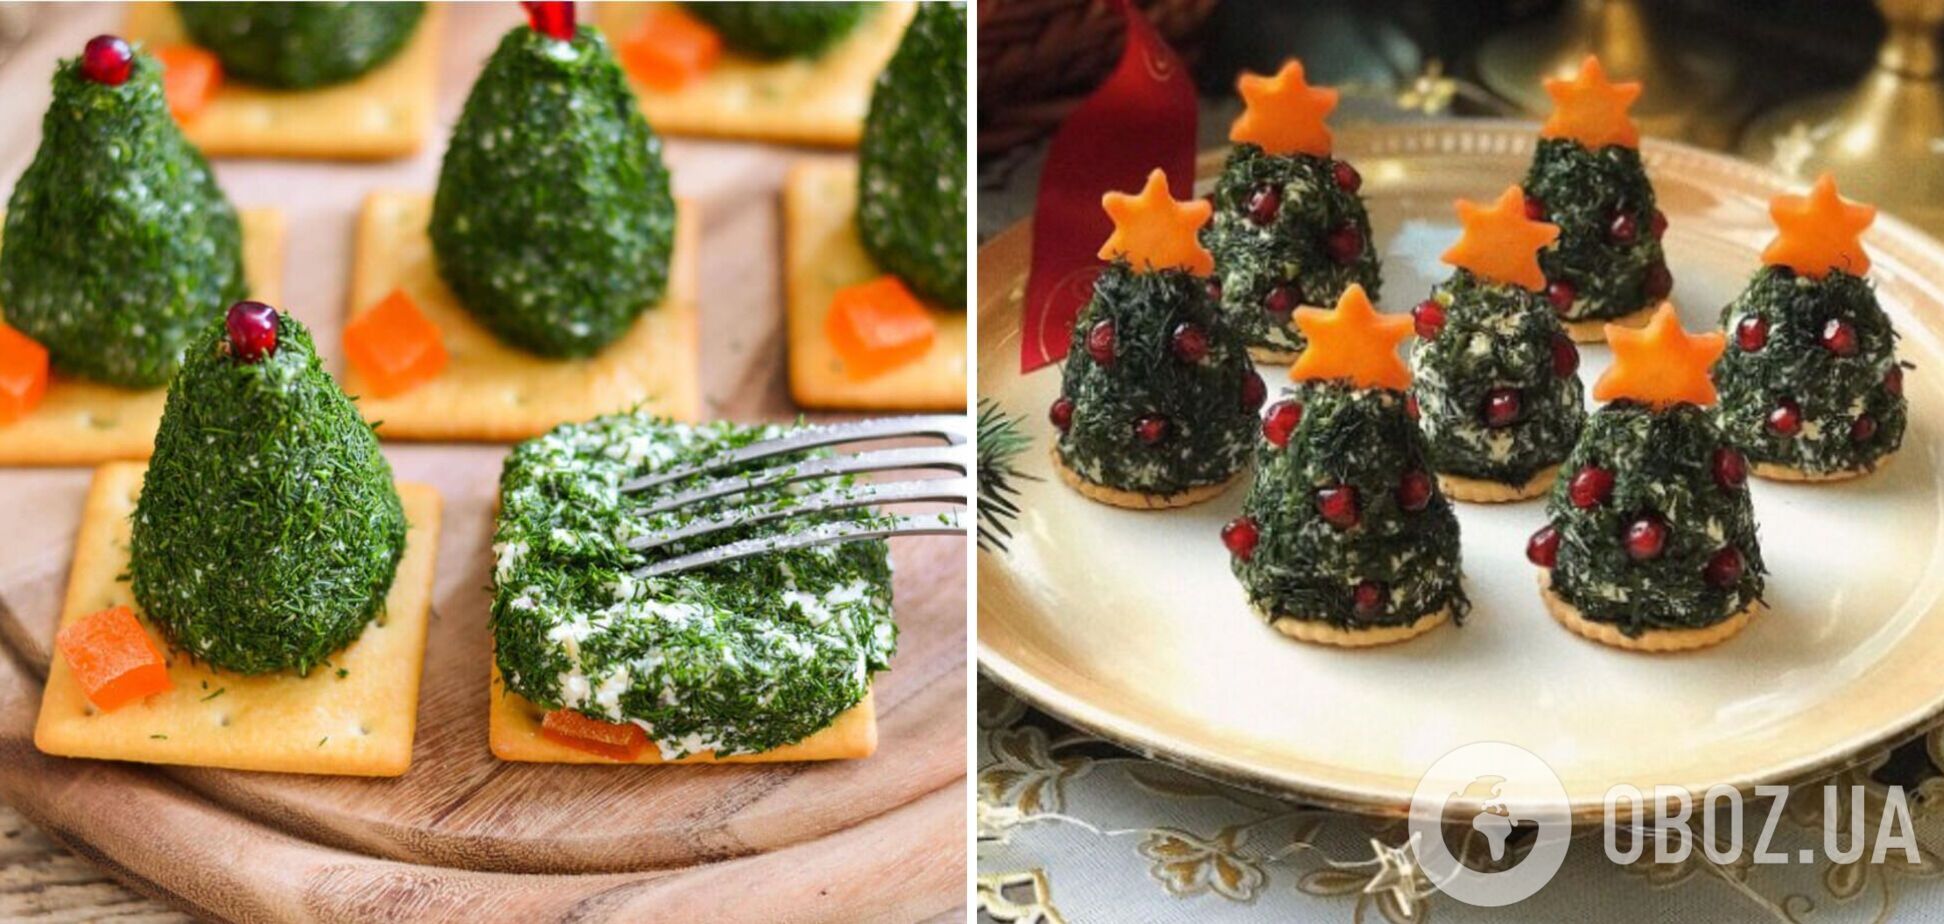 Популярна новорічна закуска на крекерах 'Ялинка': що додати для пікантного смаку